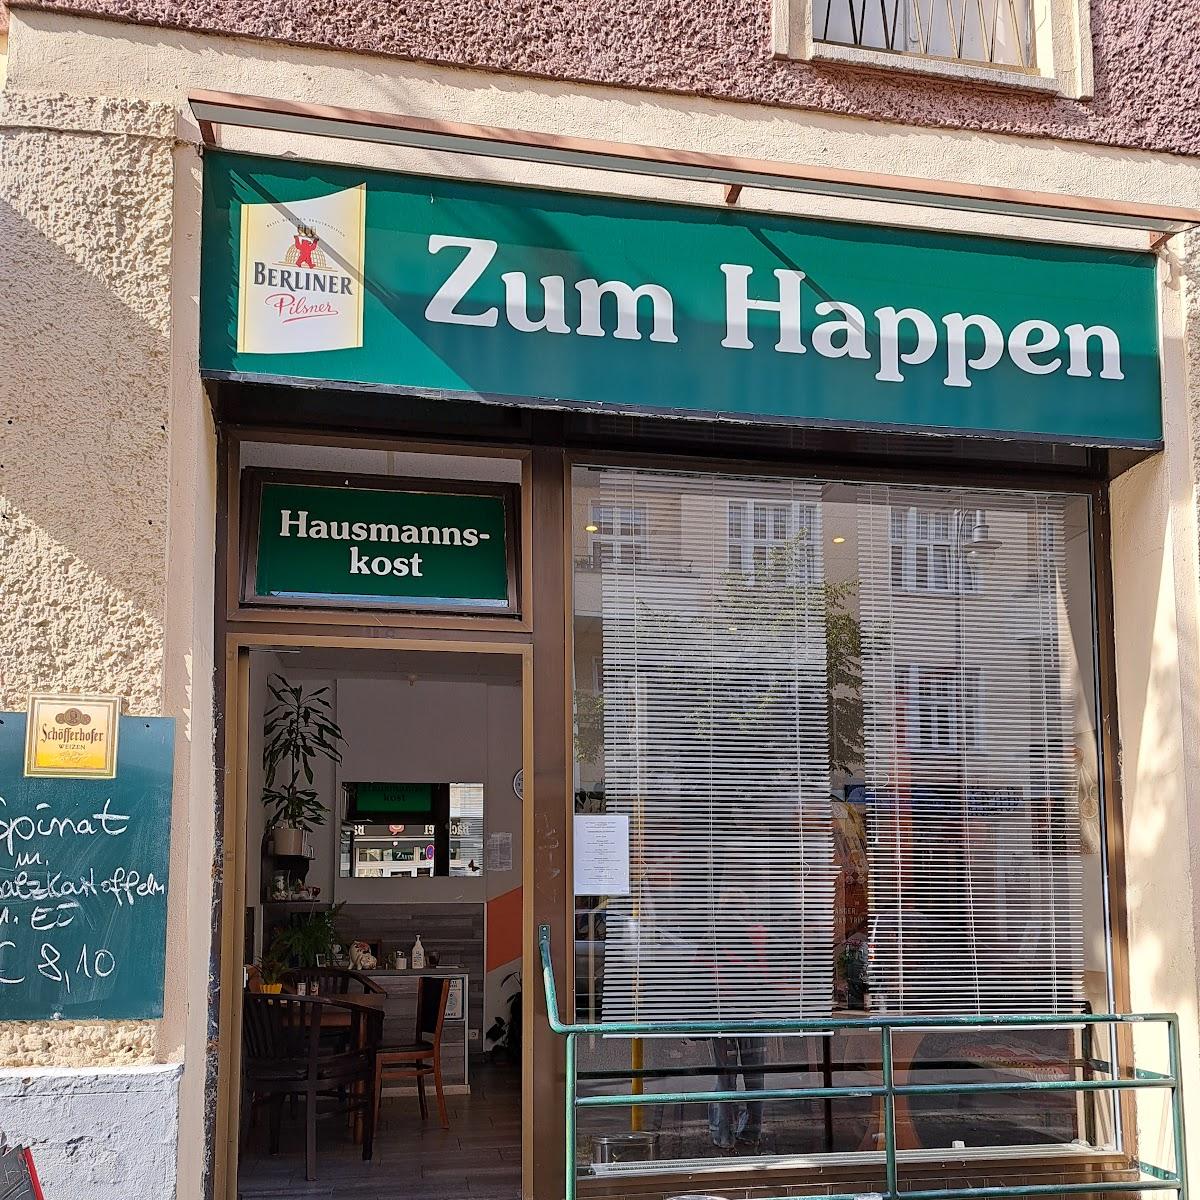 Restaurant "Essen wie bei Muddern (zum Happen)" in Berlin